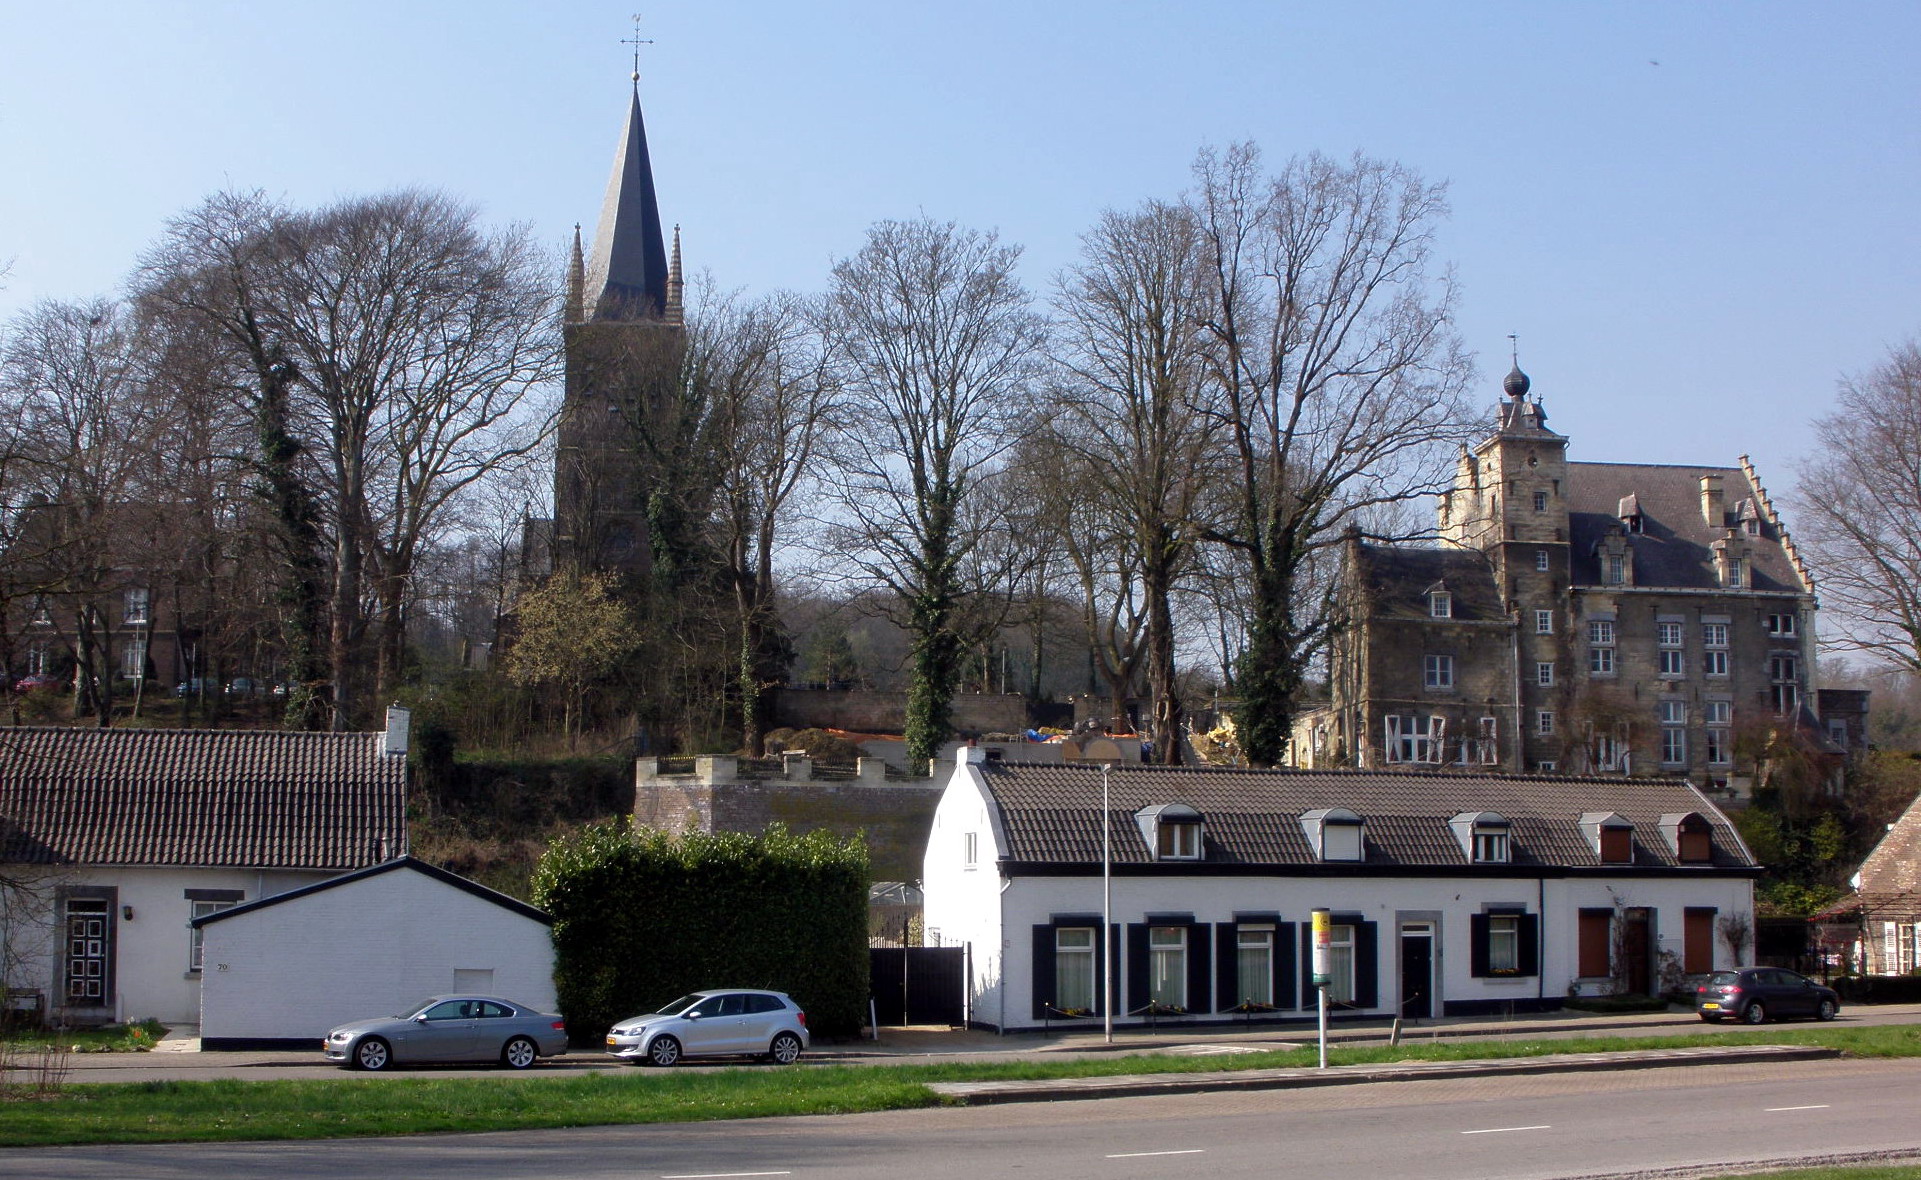 The village of Sint Pieter